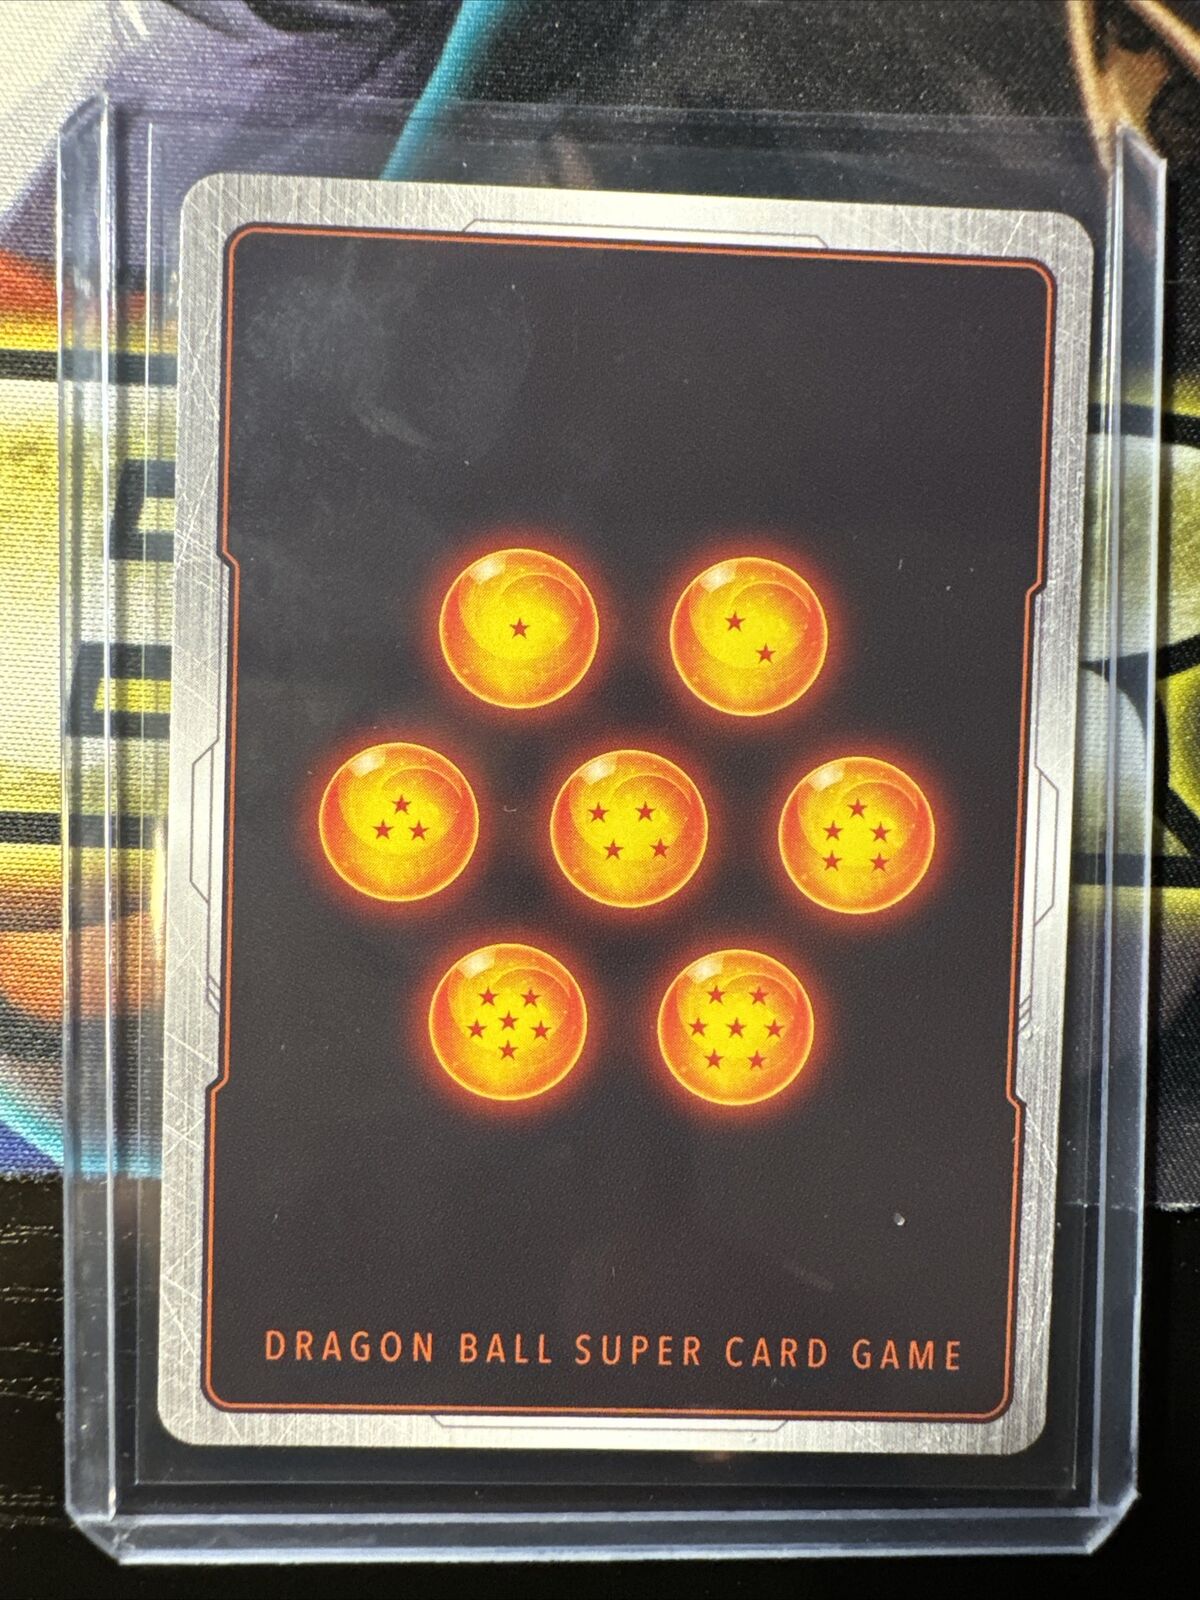 Dragon Ball Super Beyond Generations Collectors SS Goku BT24-010 Alt Gold Stamp